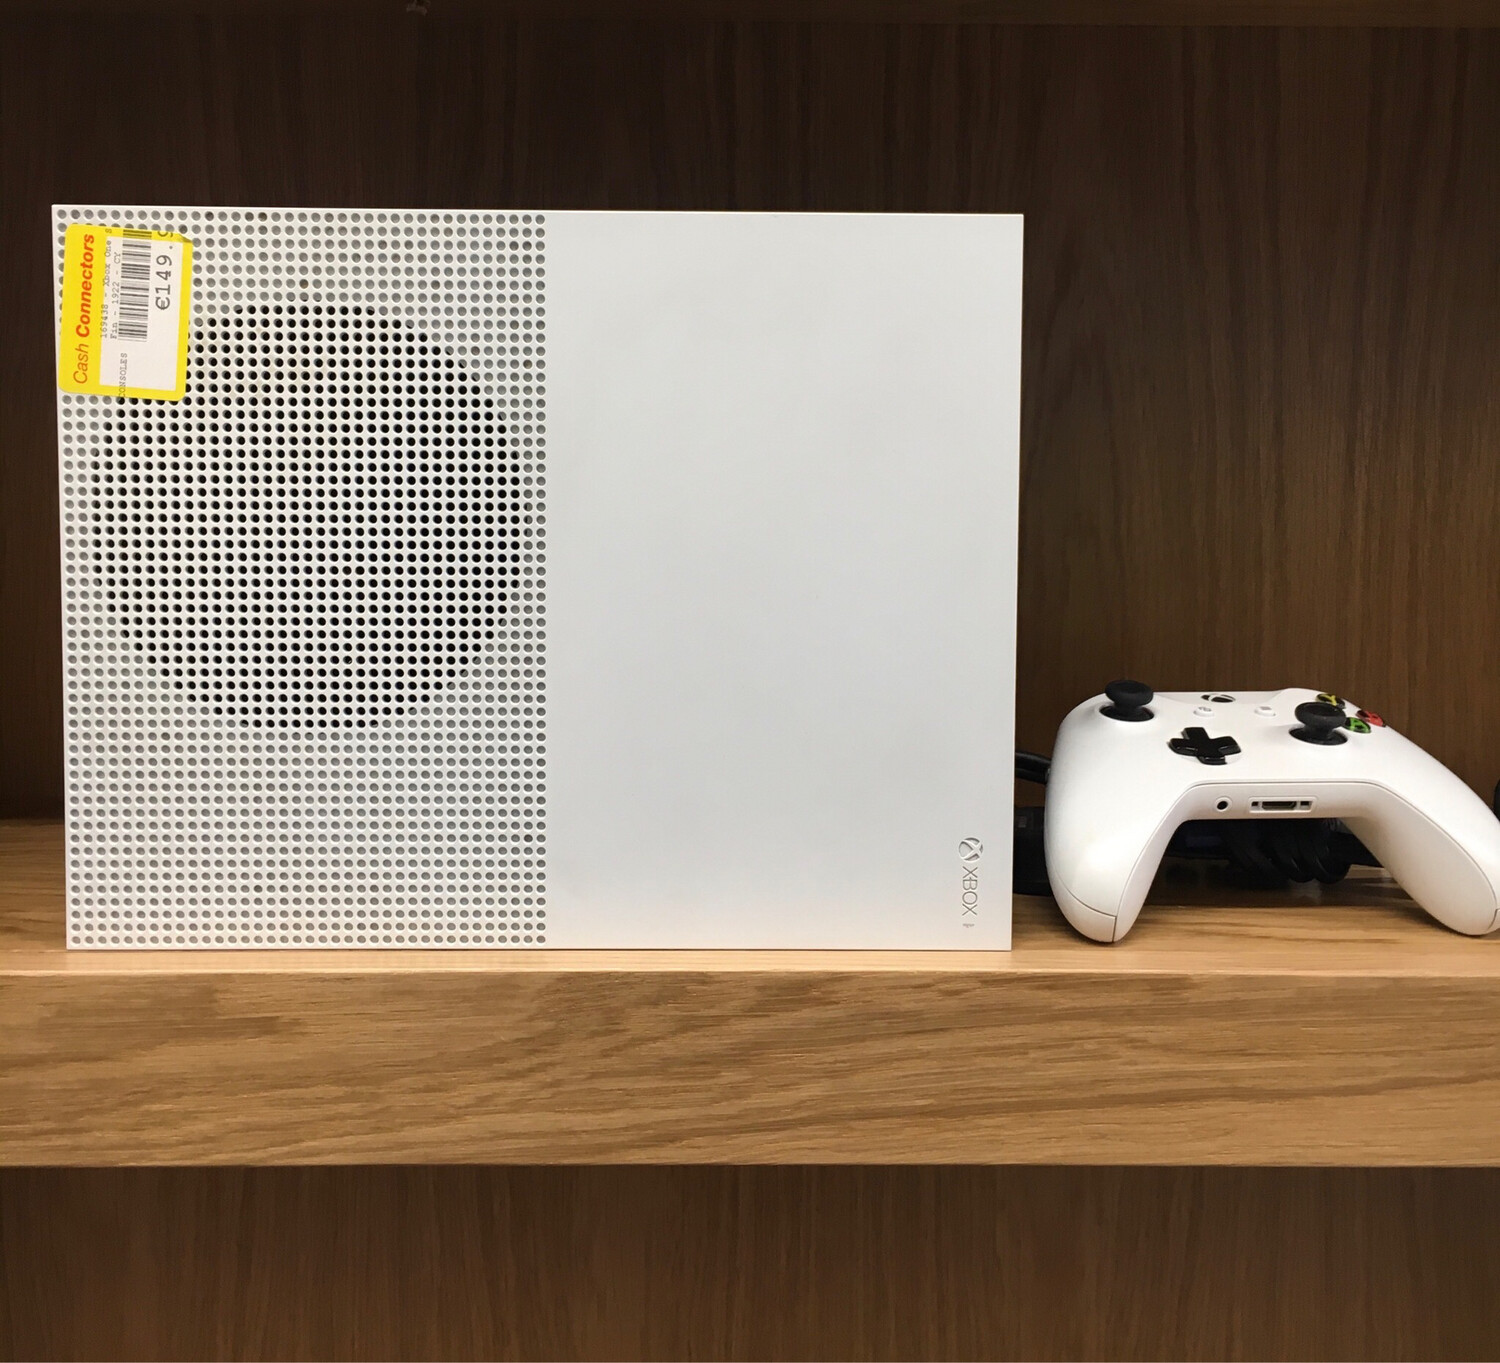 Xbox One S white Console